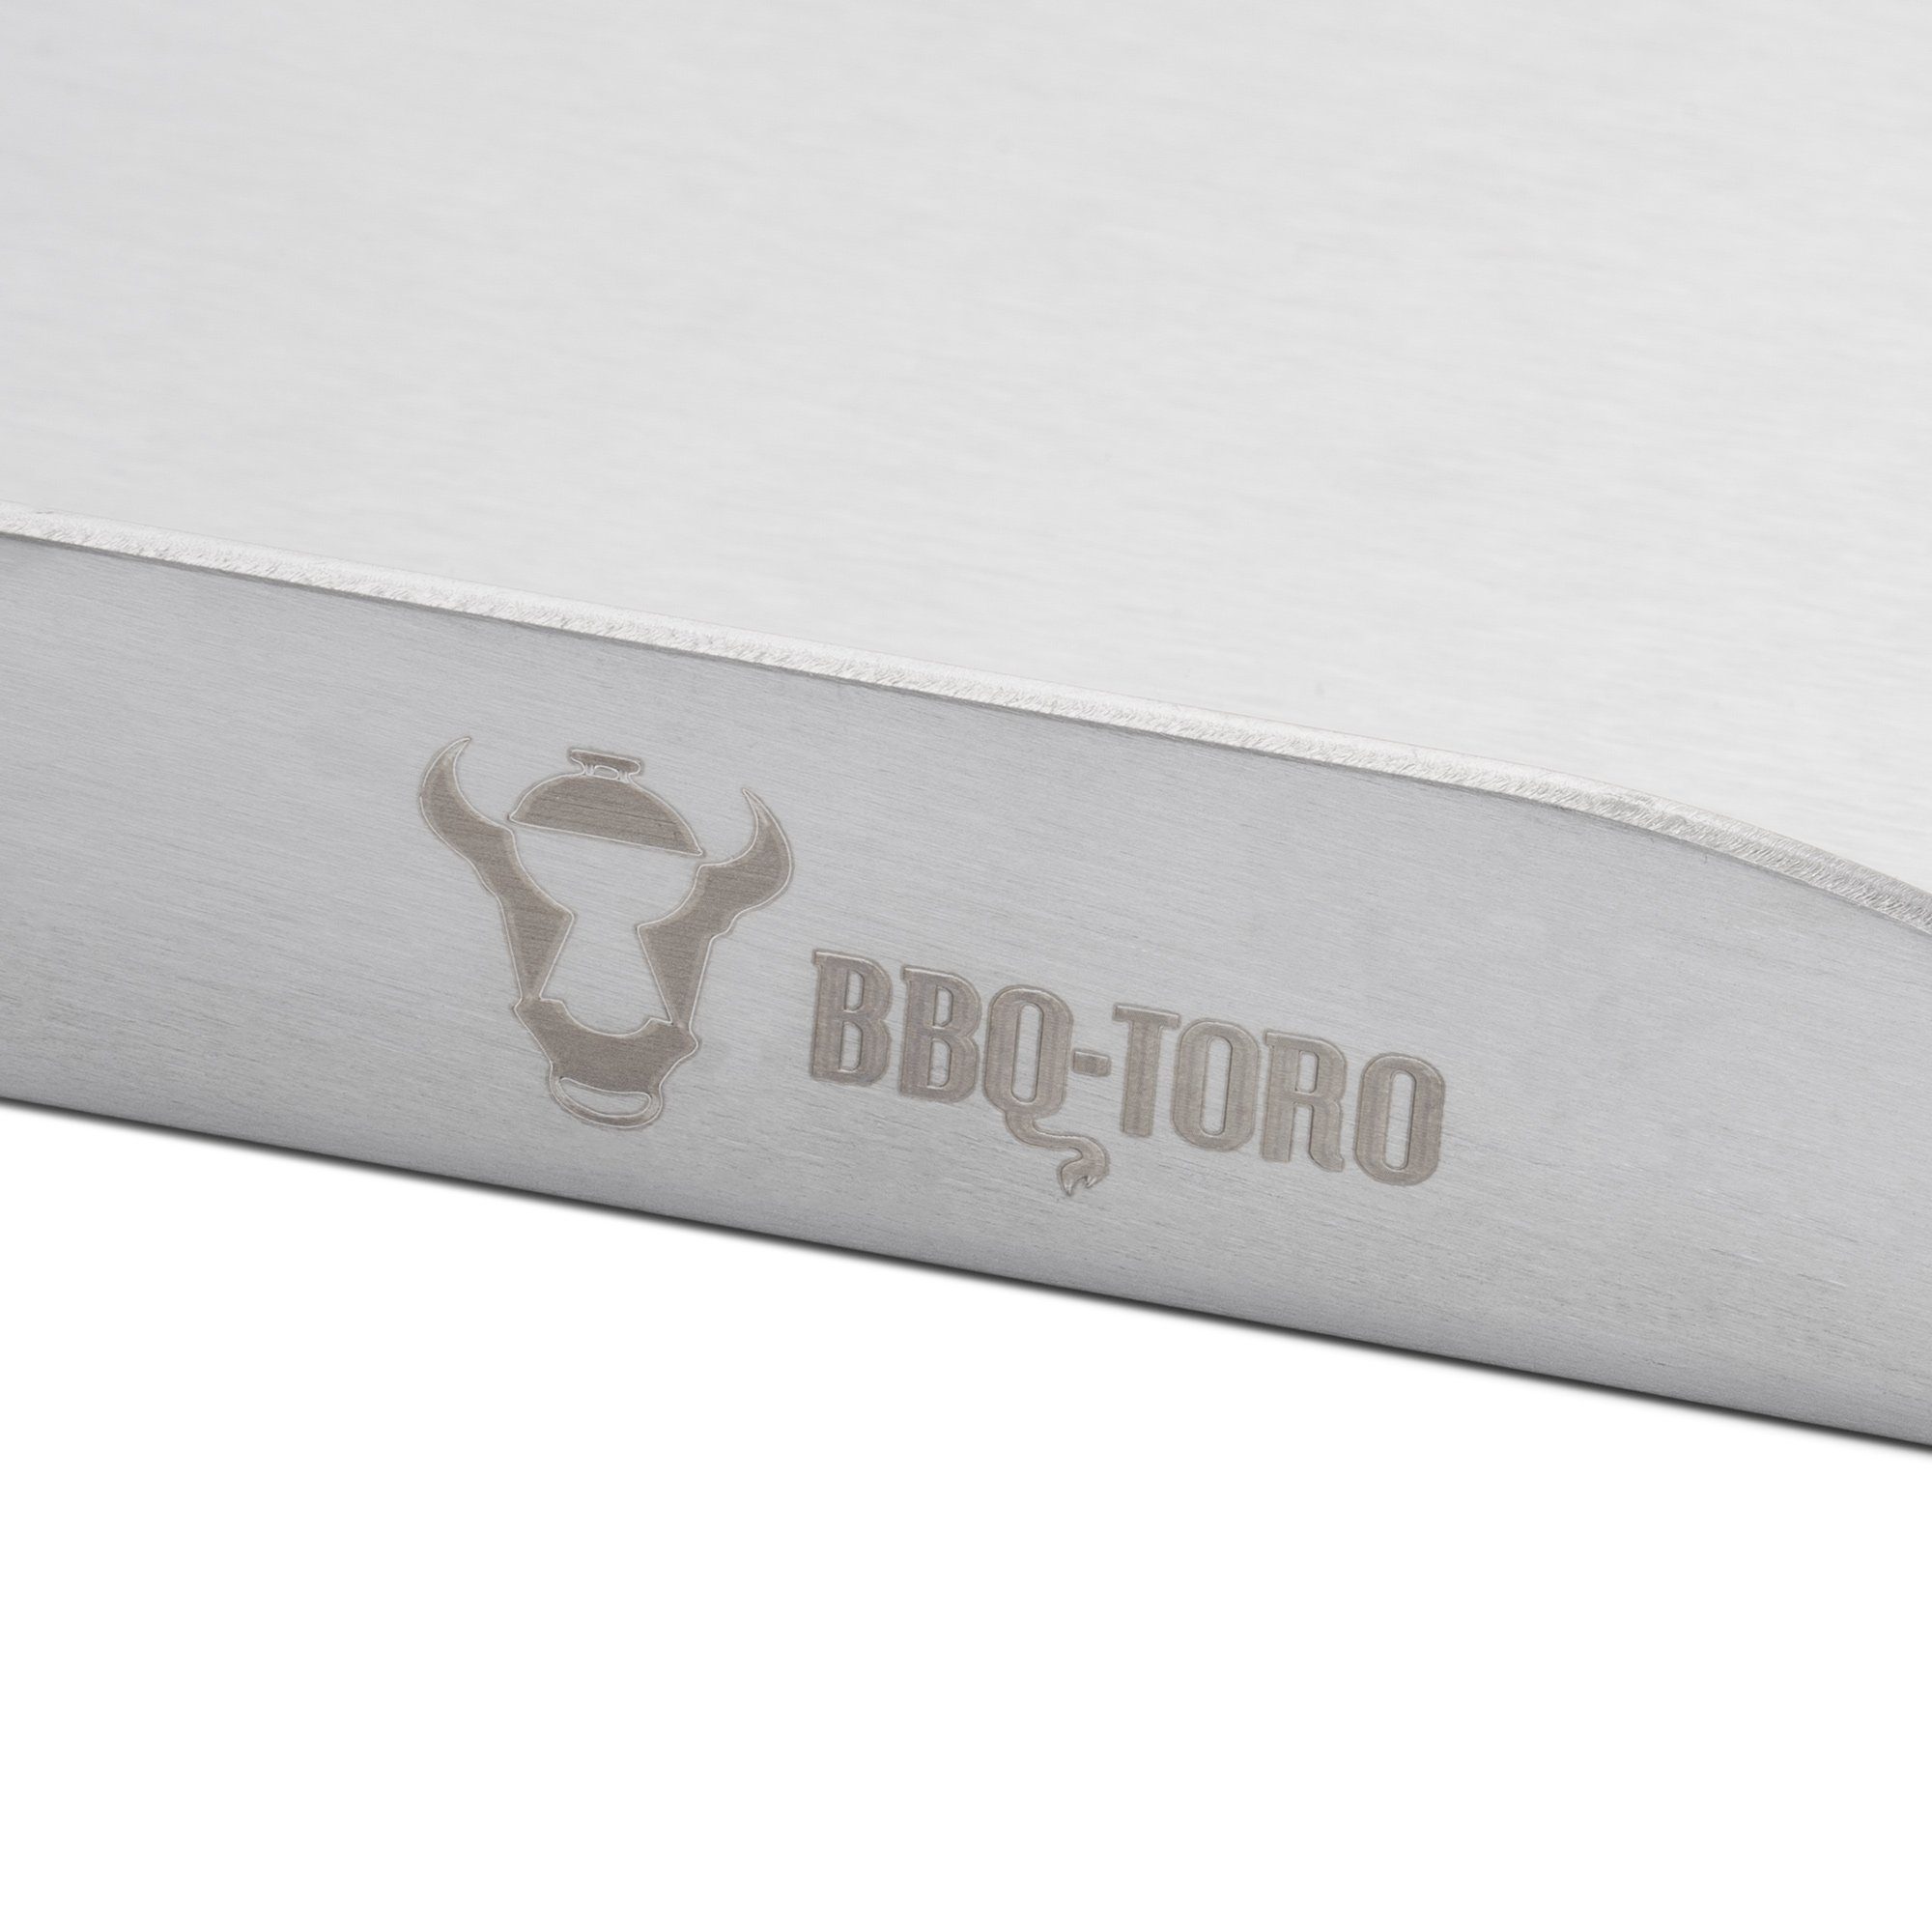 Grillpfanne, BBQ-Toro BBQ 49 cm, x Edelstahl Grillplatte 32,5 (1-St), Einfache Reinigung Grillblech Plancha,